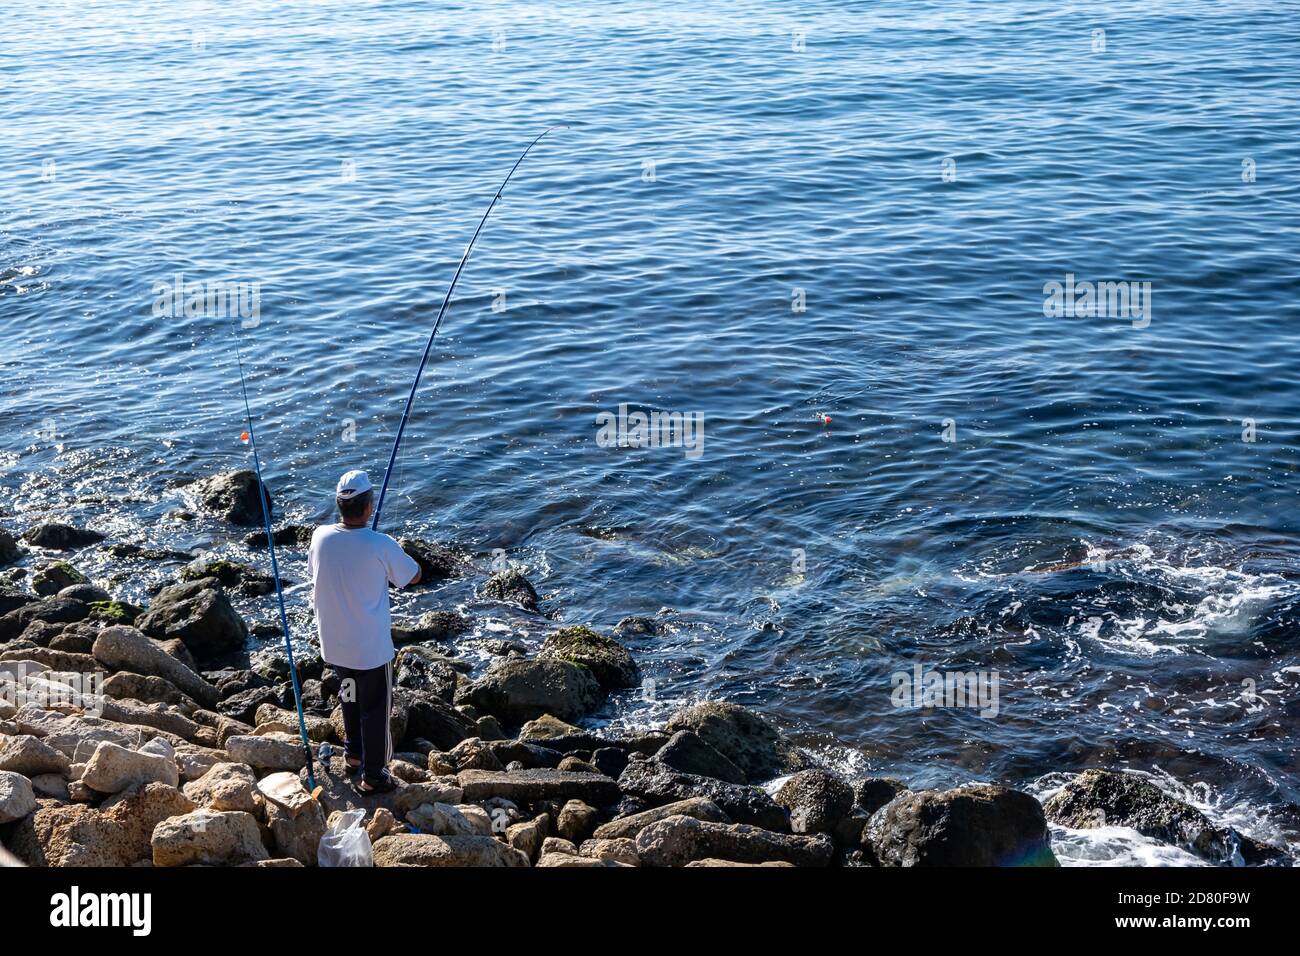 Pêcheur debout sur des rochers avec deux cannes à pêche un jour ensoleillé. Chapeau blanc pour la protection du soleil, les loisirs et la nourriture gratuite. Fond bleu de mer agité, au-dessus Banque D'Images